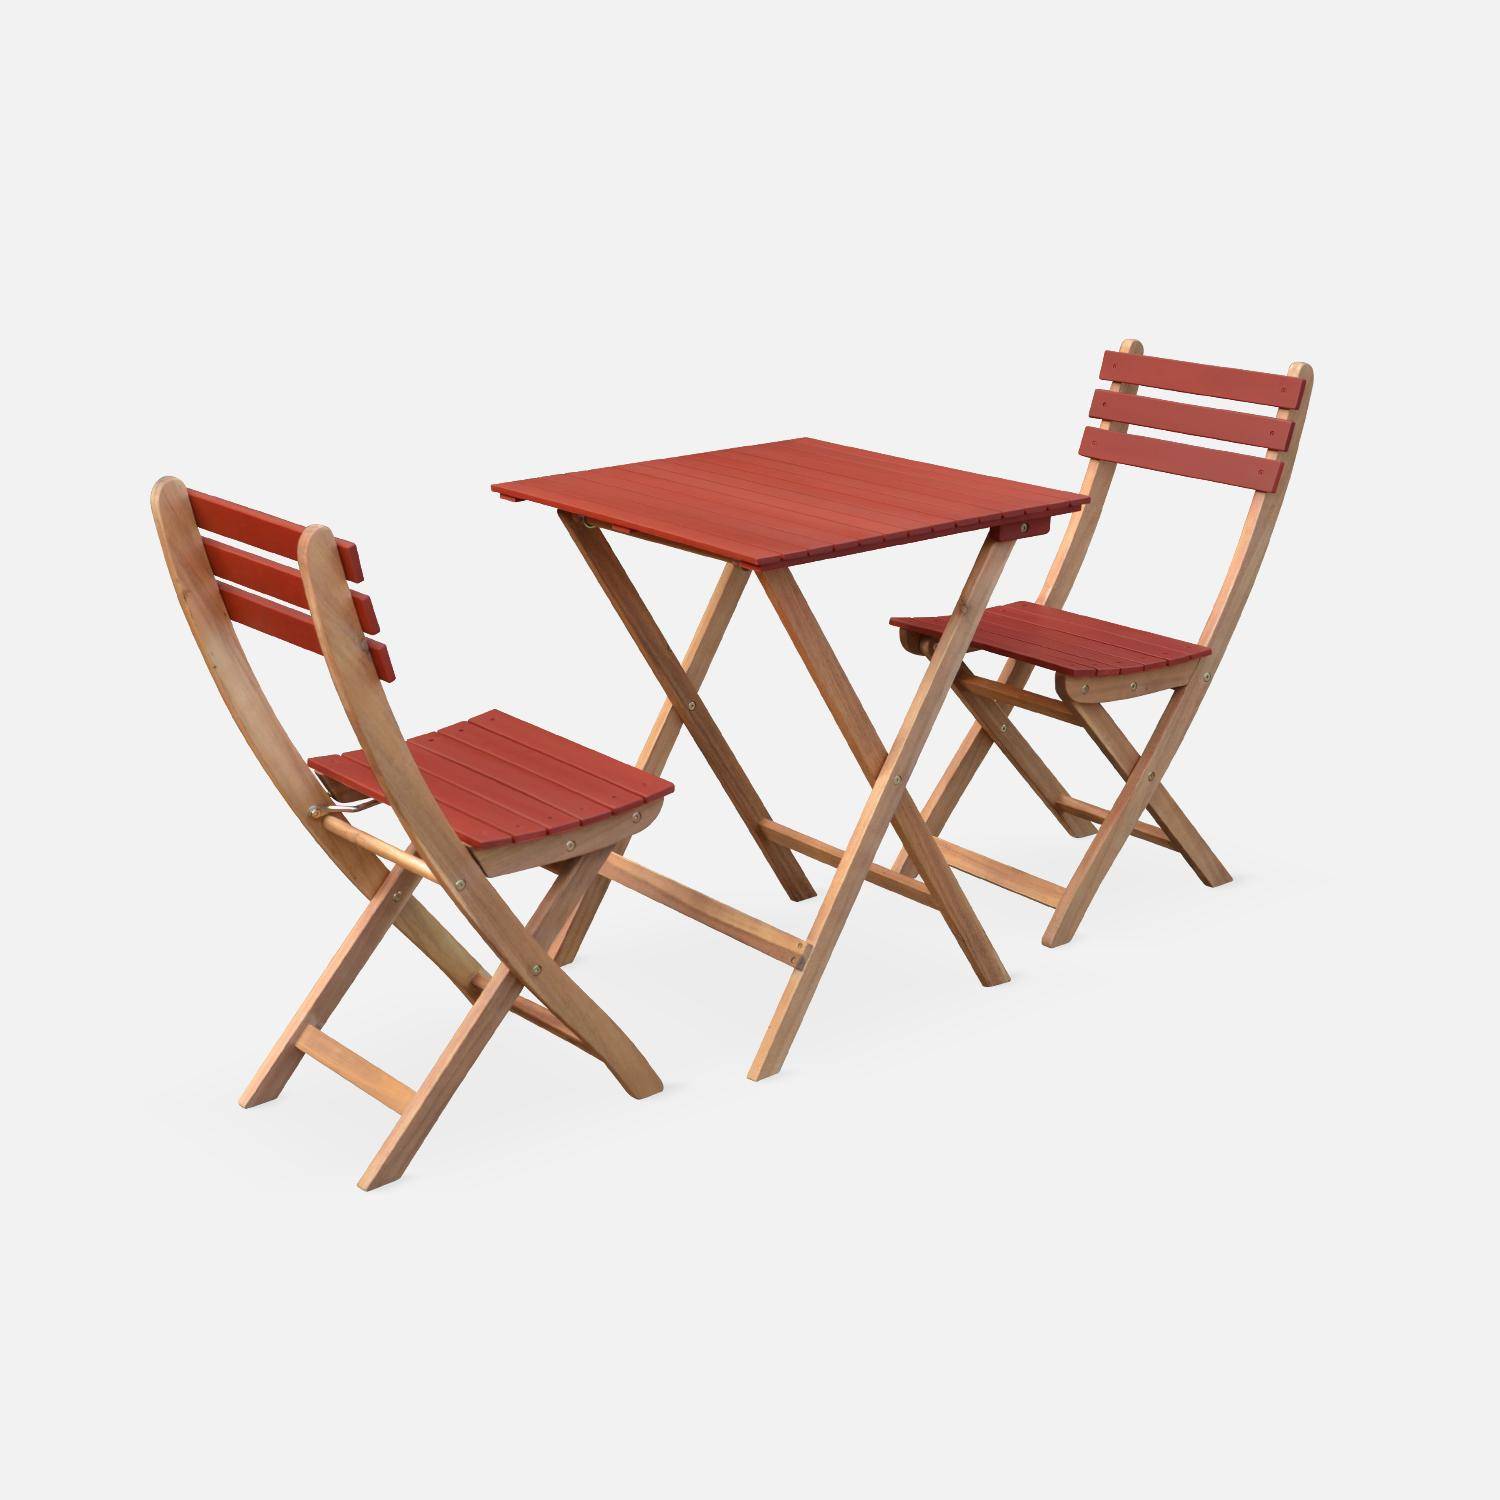 Conjunto de jardín de madera Bistro 60x60cm - Barcelona - terracota, mesa plegable cuadrada bicolor con 2 sillas plegables, acacia Photo1